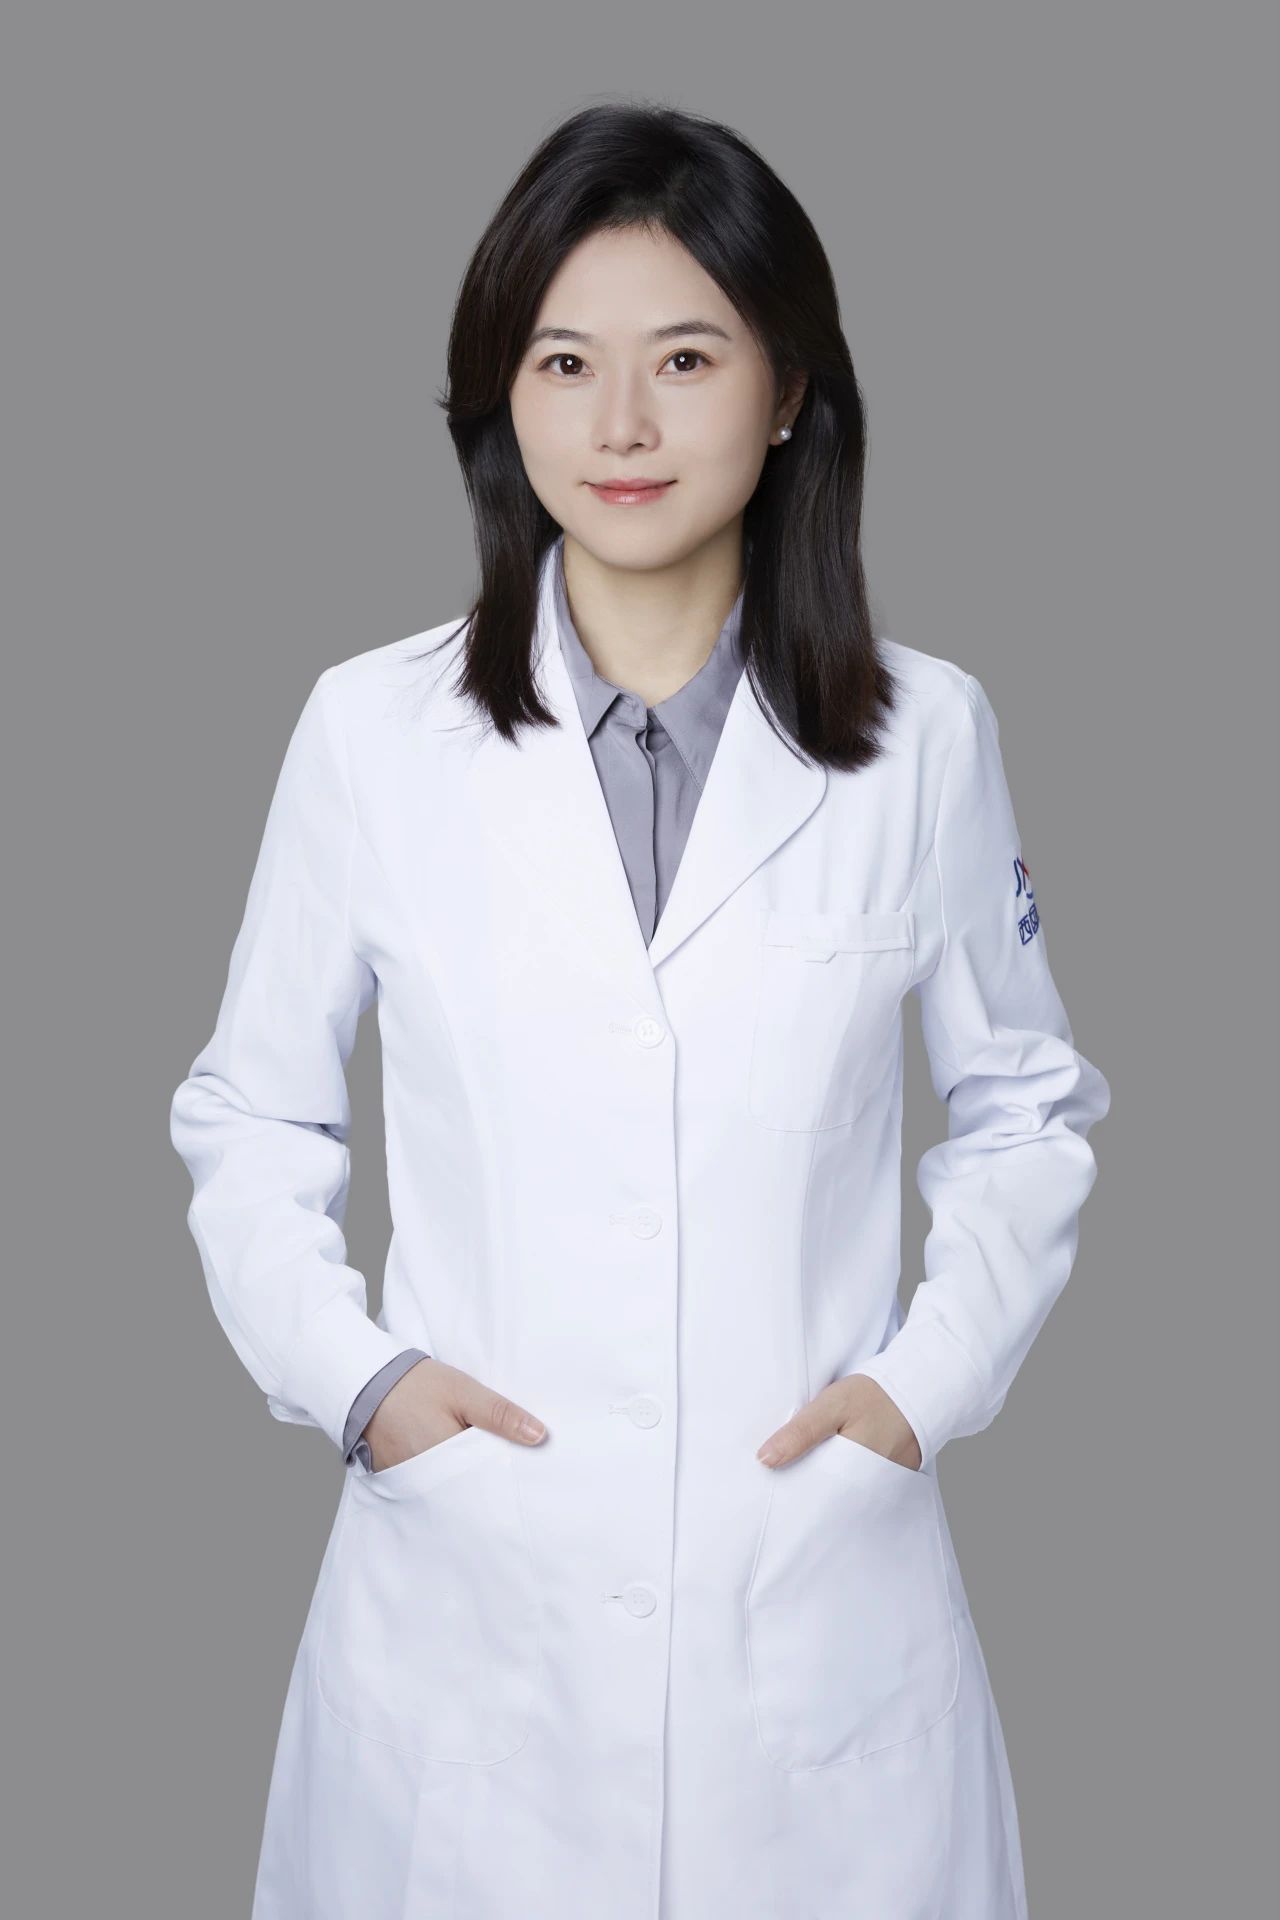 施玮 锦欣西囡妇女儿童医院常务副院长